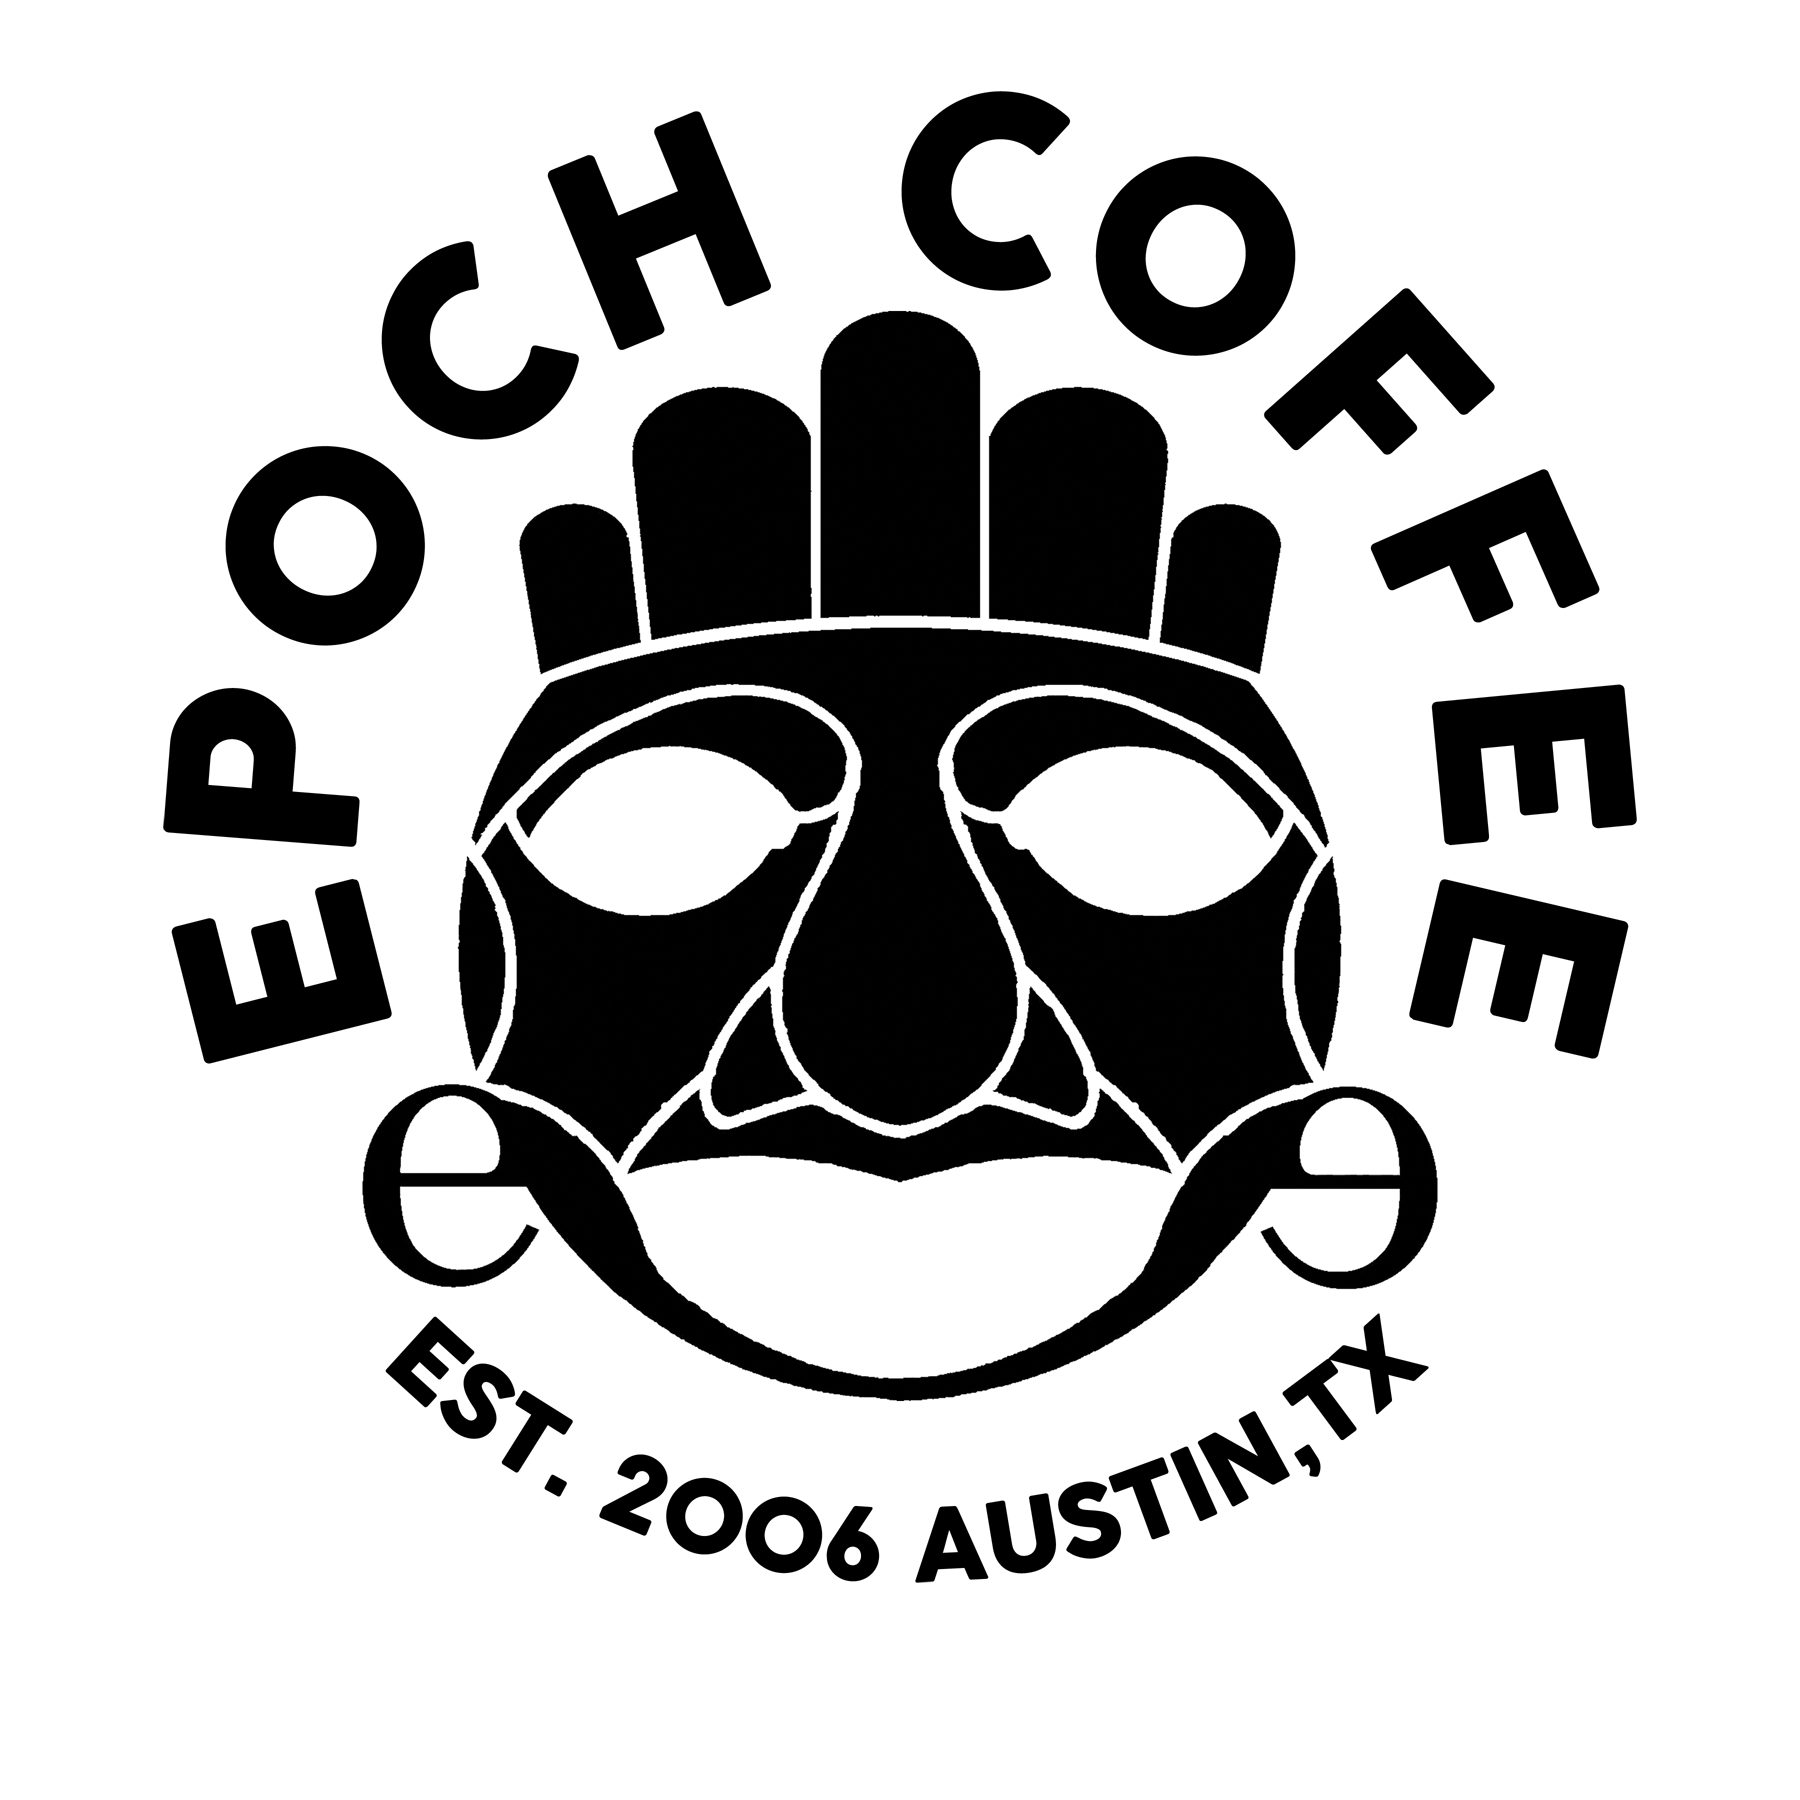 Epoch Coffee